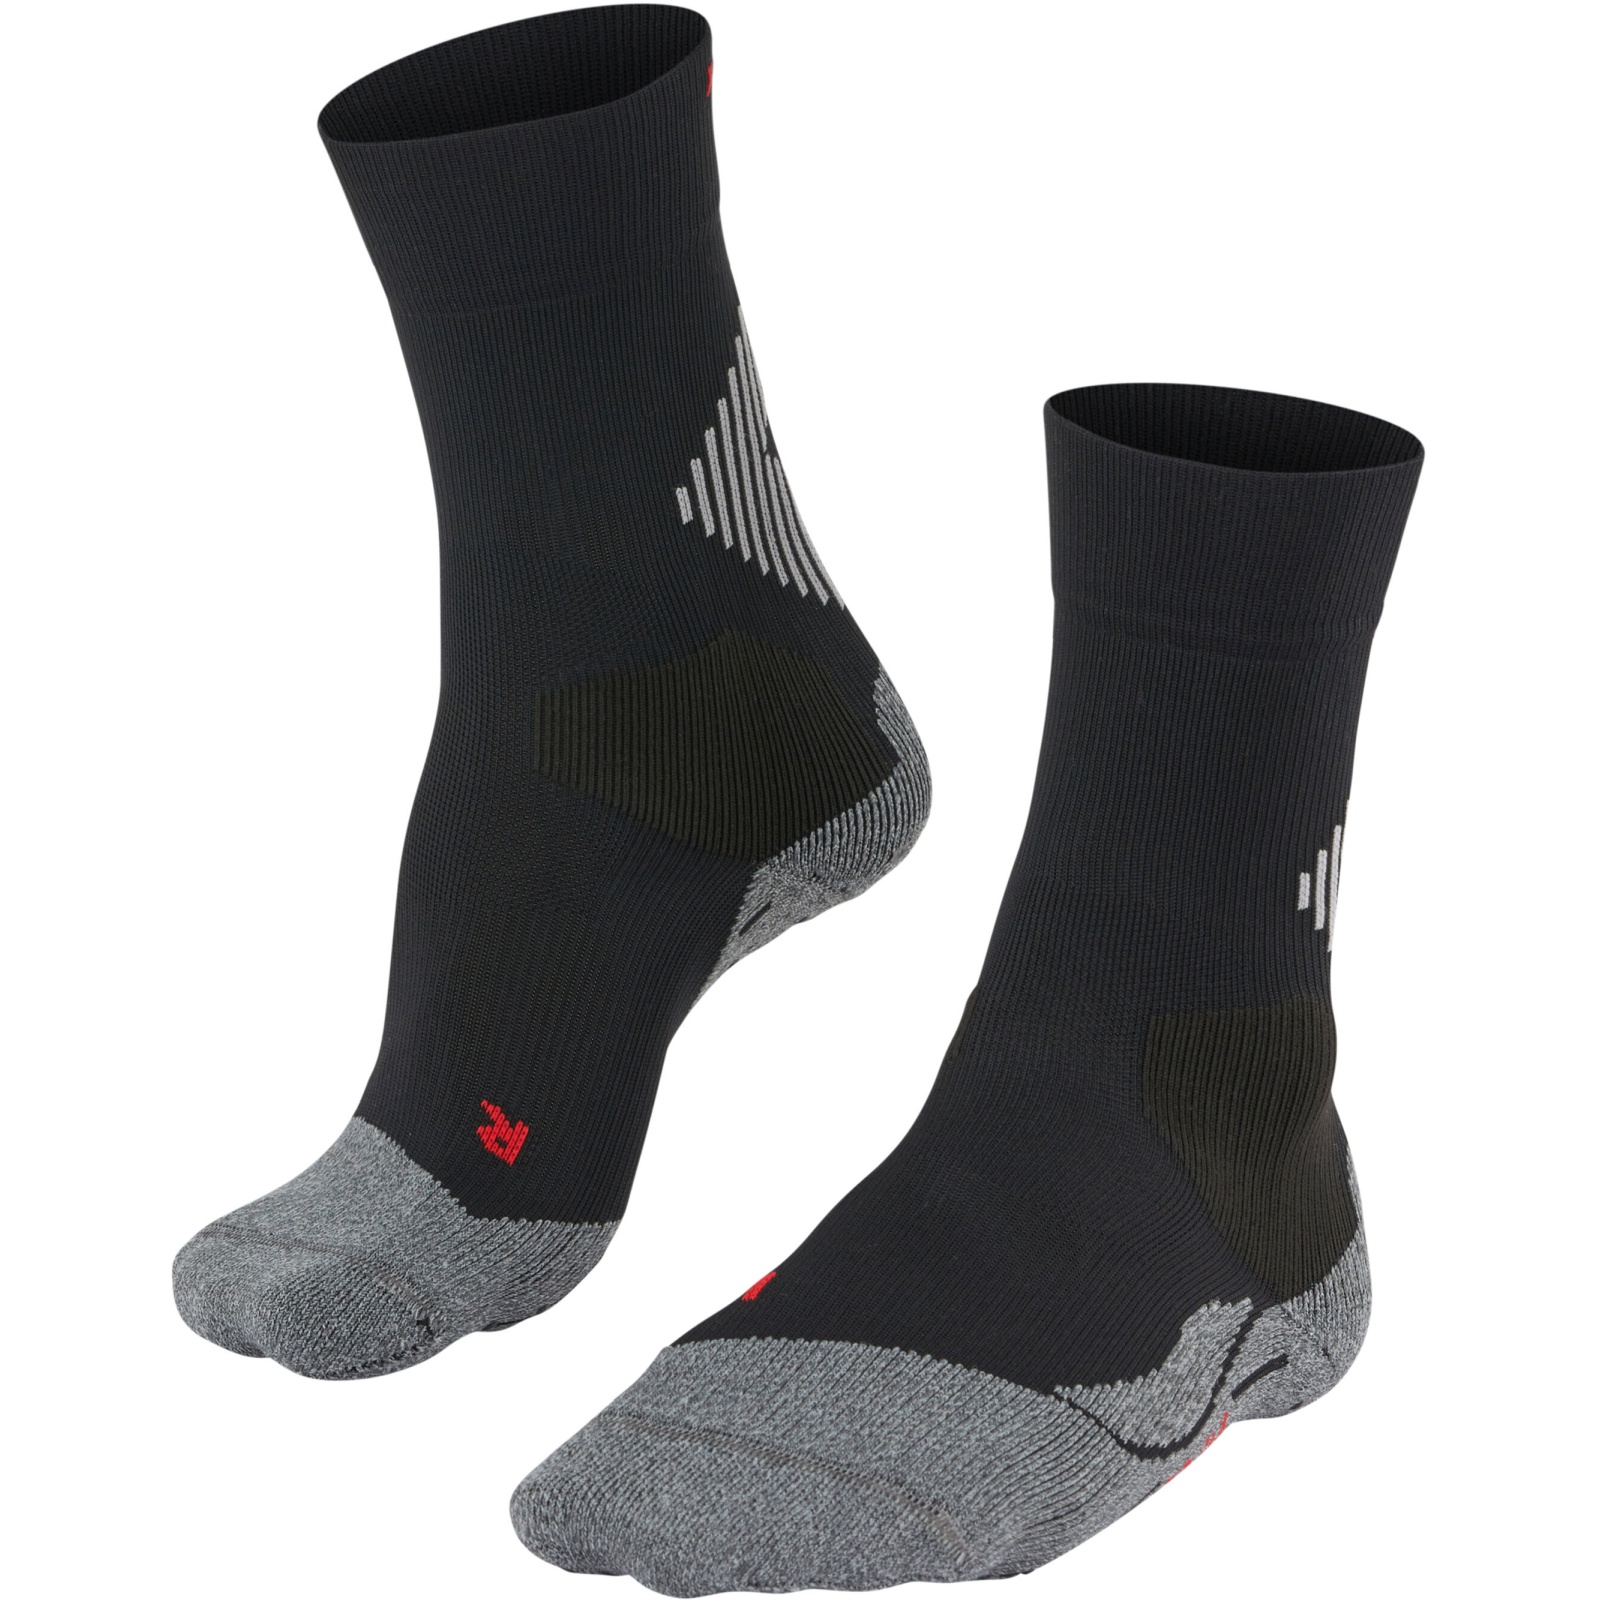 Produktbild von Falke 4Grip Stabilizing Socken - schwarz 3019